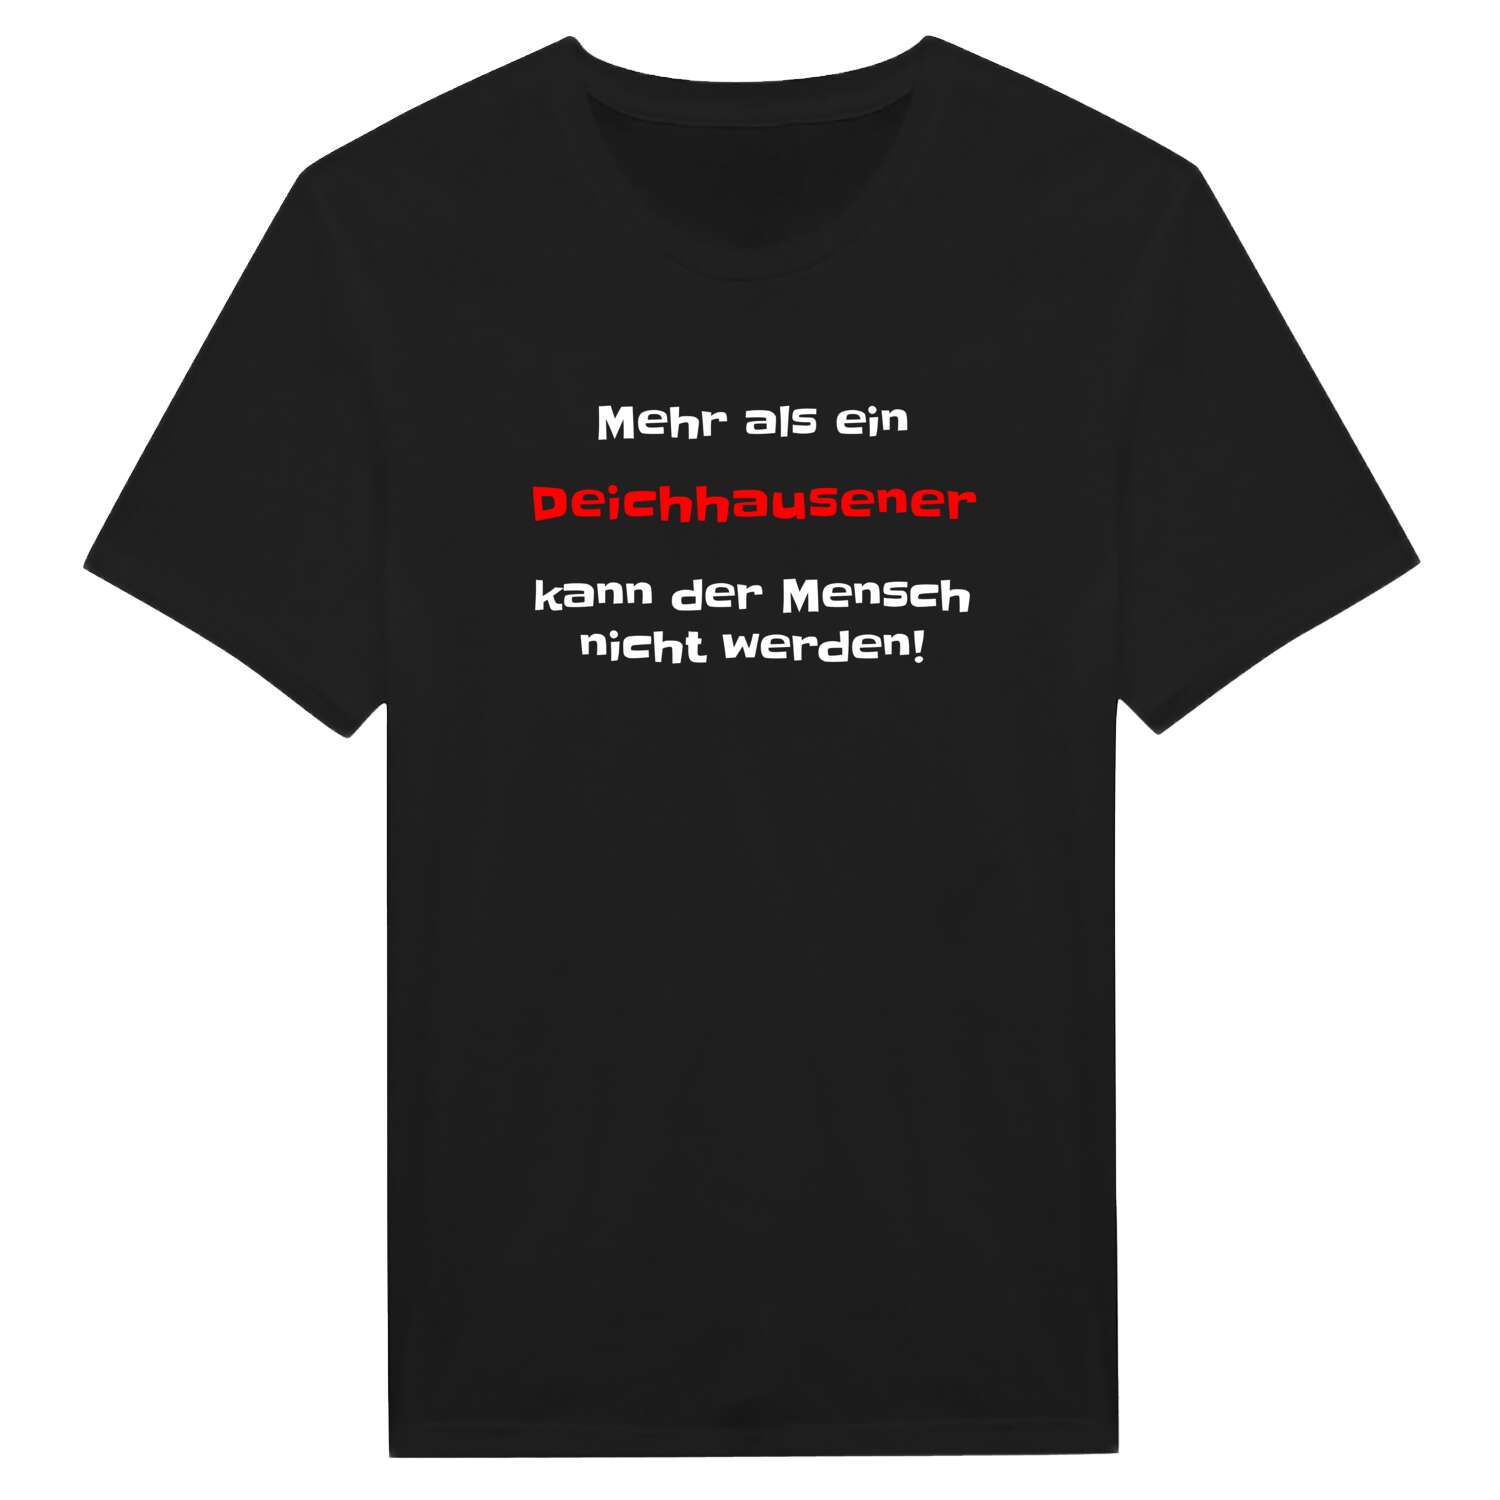 Deichhausen T-Shirt »Mehr als ein«